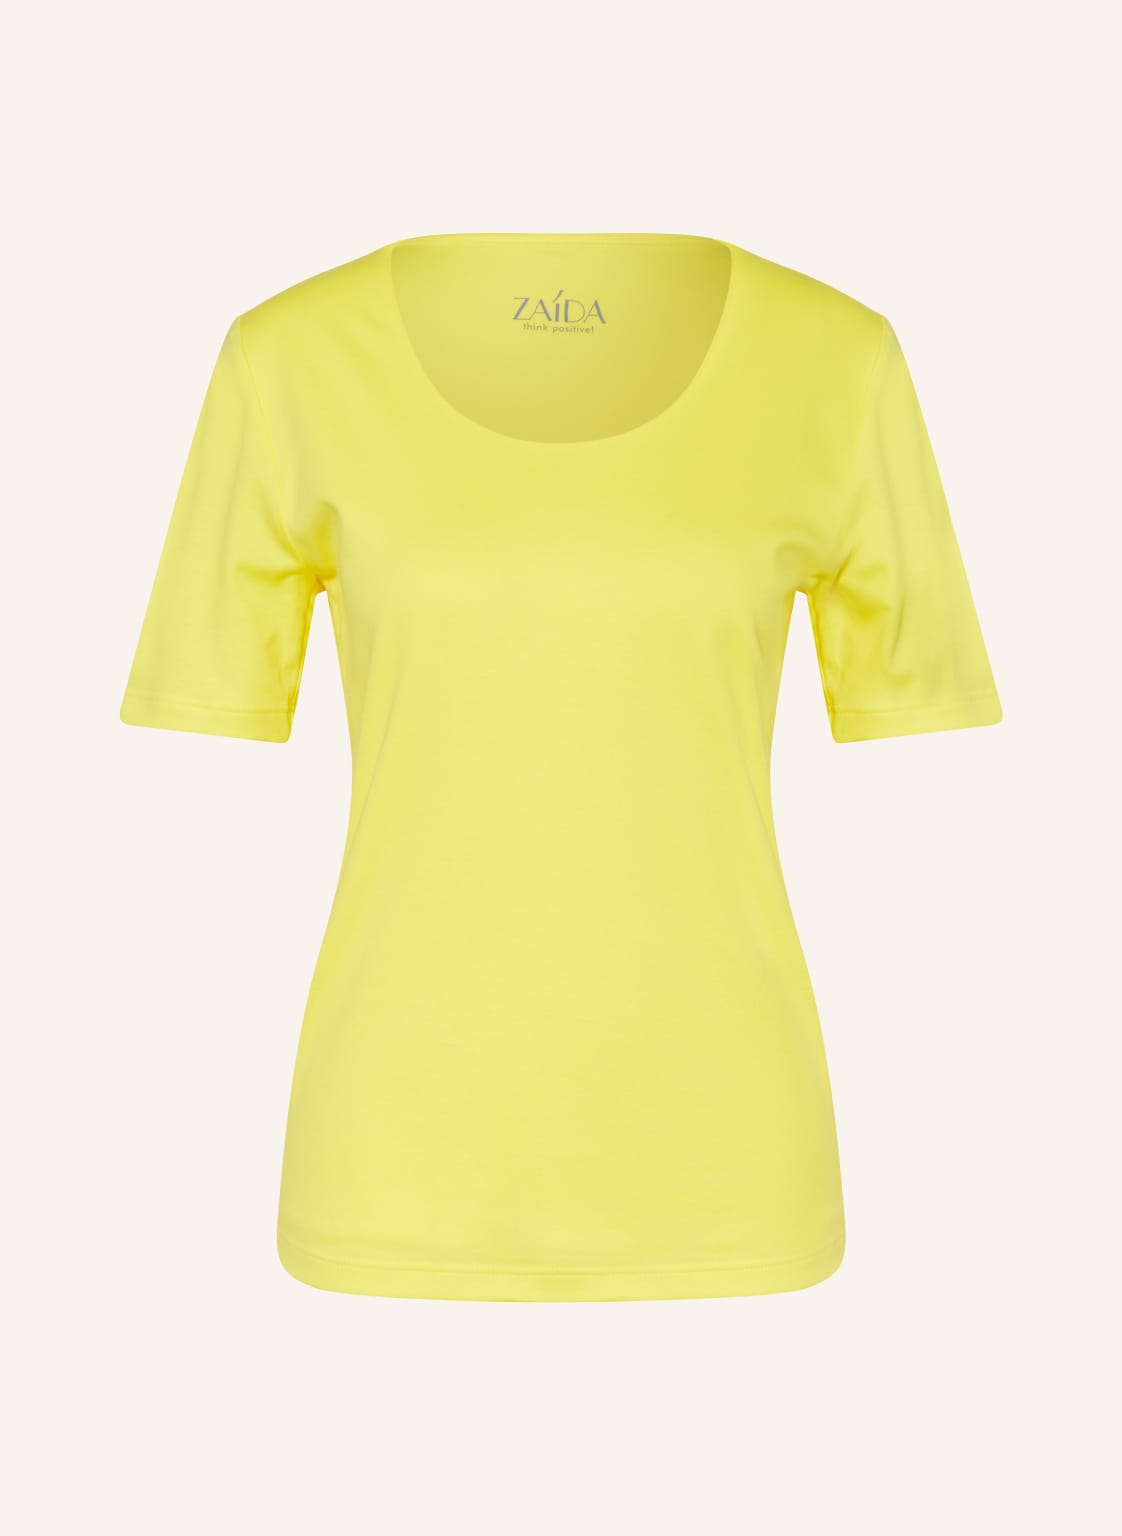 Zaída T-Shirt gelb von ZAÍDA